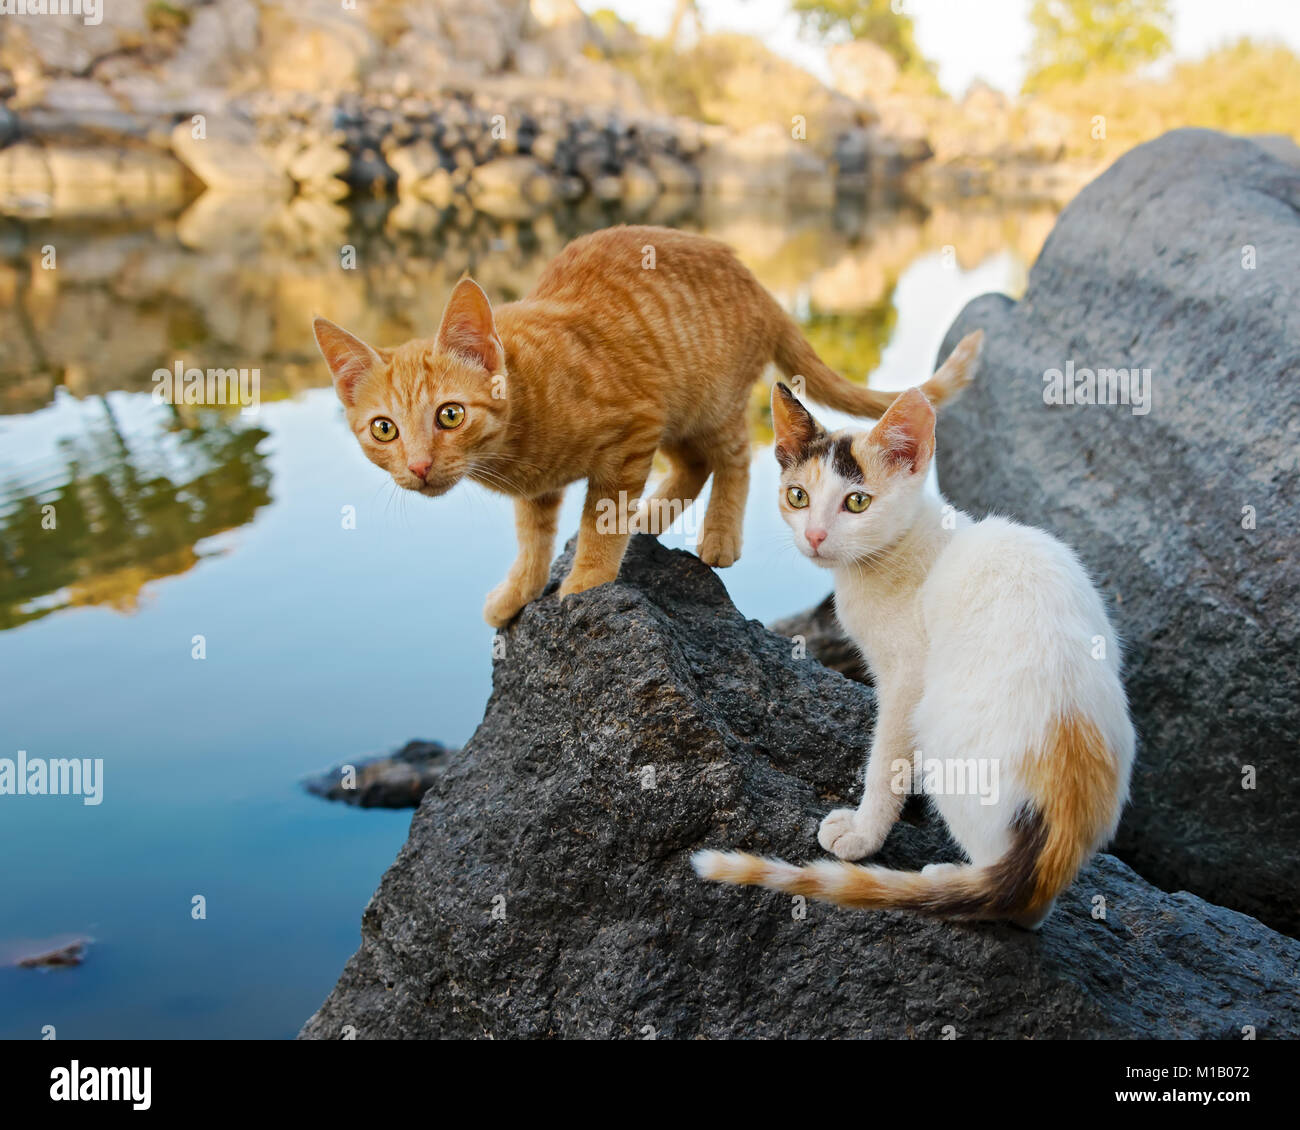 Deux jolies jeunes chatons chat du scoutisme autour de l'ensemble du terrain sur un rocher au bord d'un lac avec de l'eau calme, des réflexions d'une nature merveilleuse, Lesbos, Grèce Banque D'Images